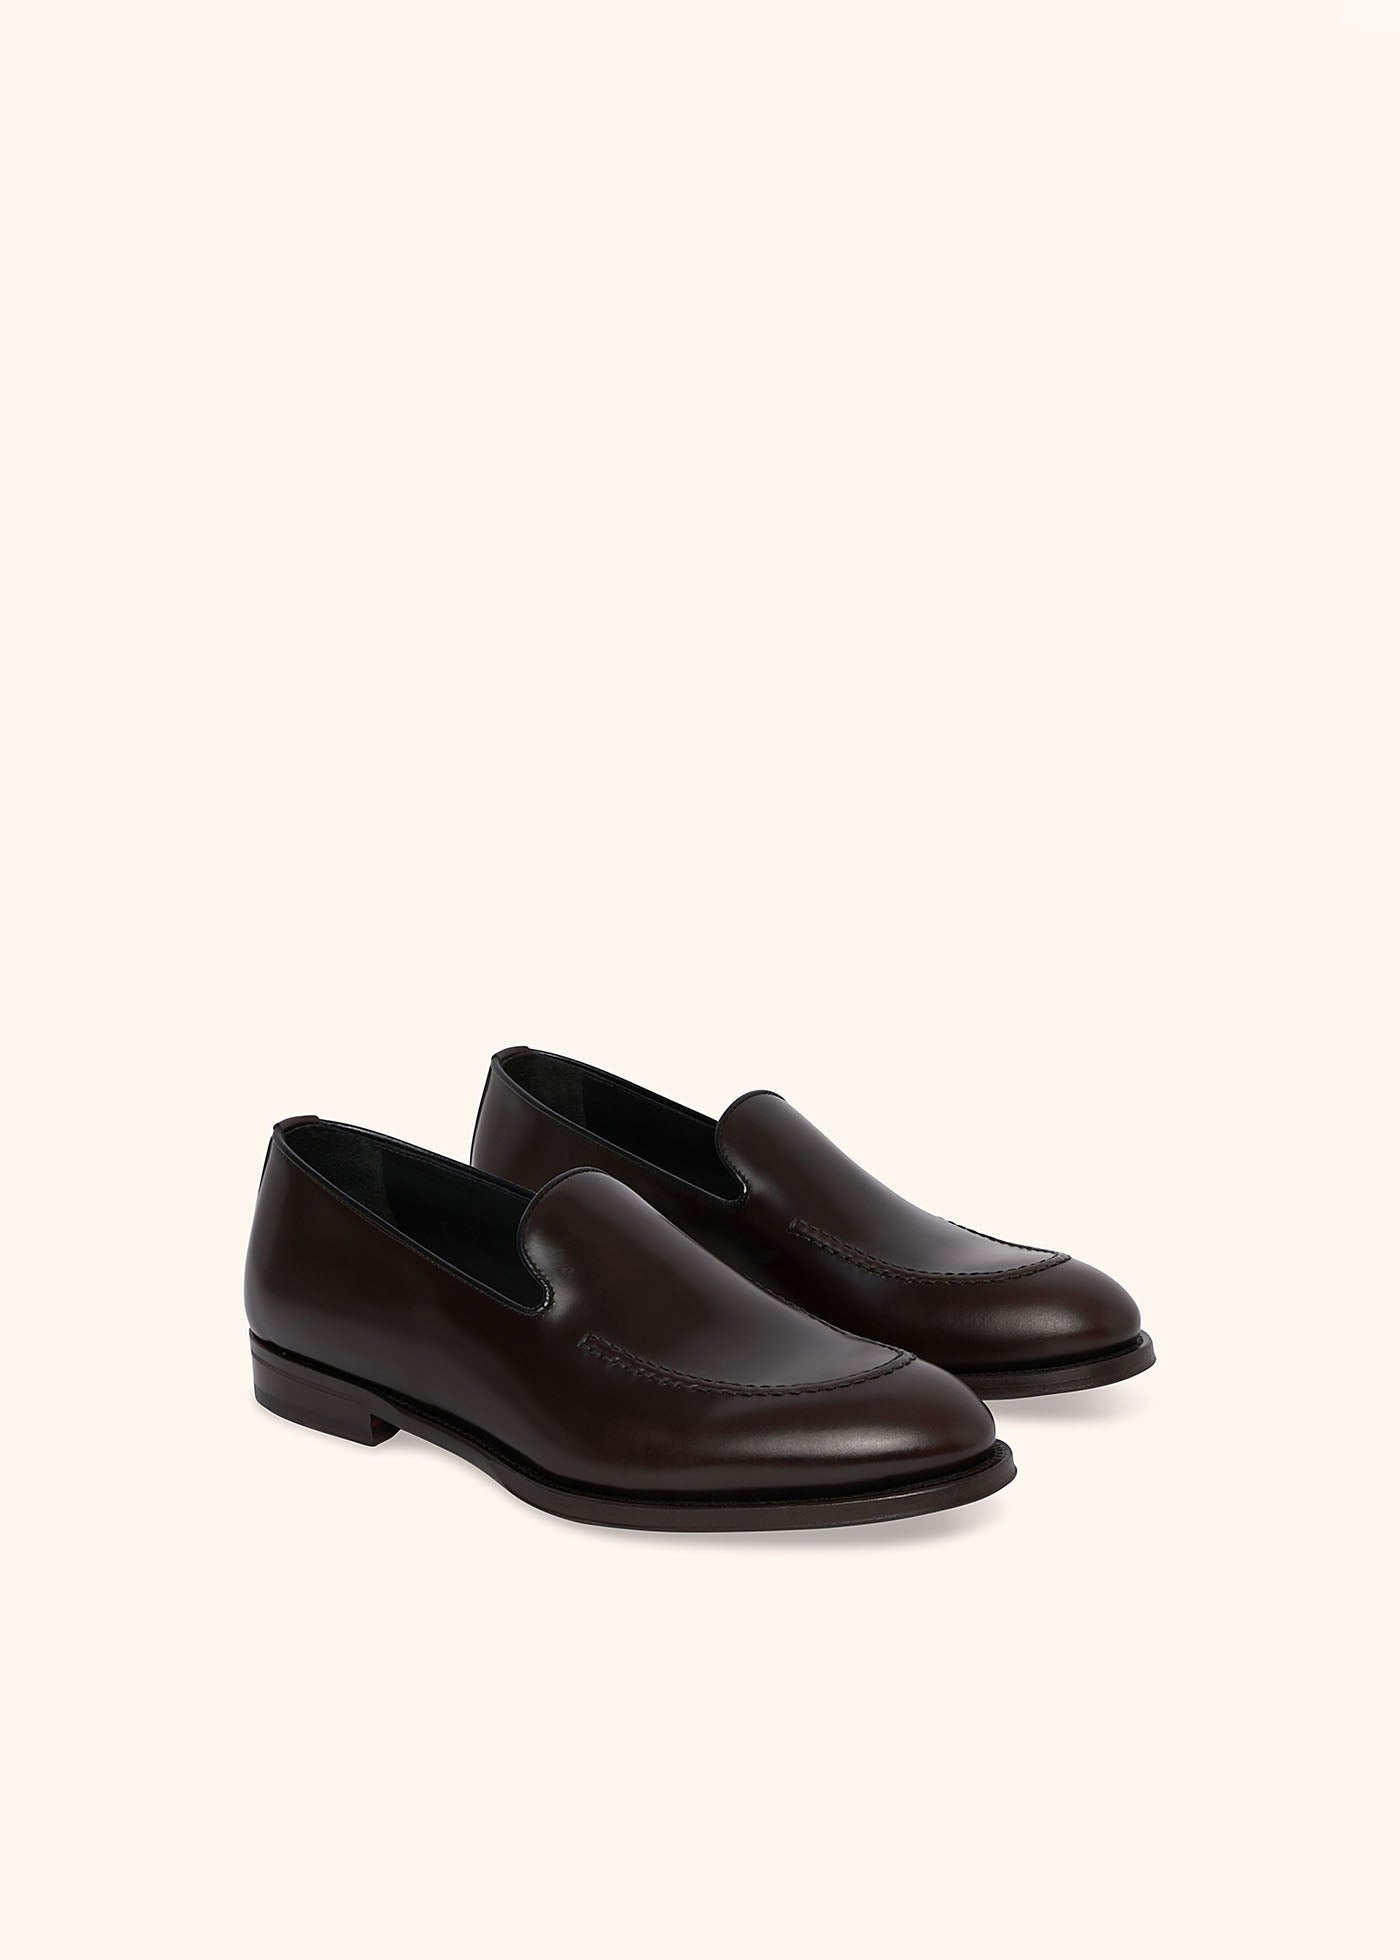 Loafer Shoes Calfskin